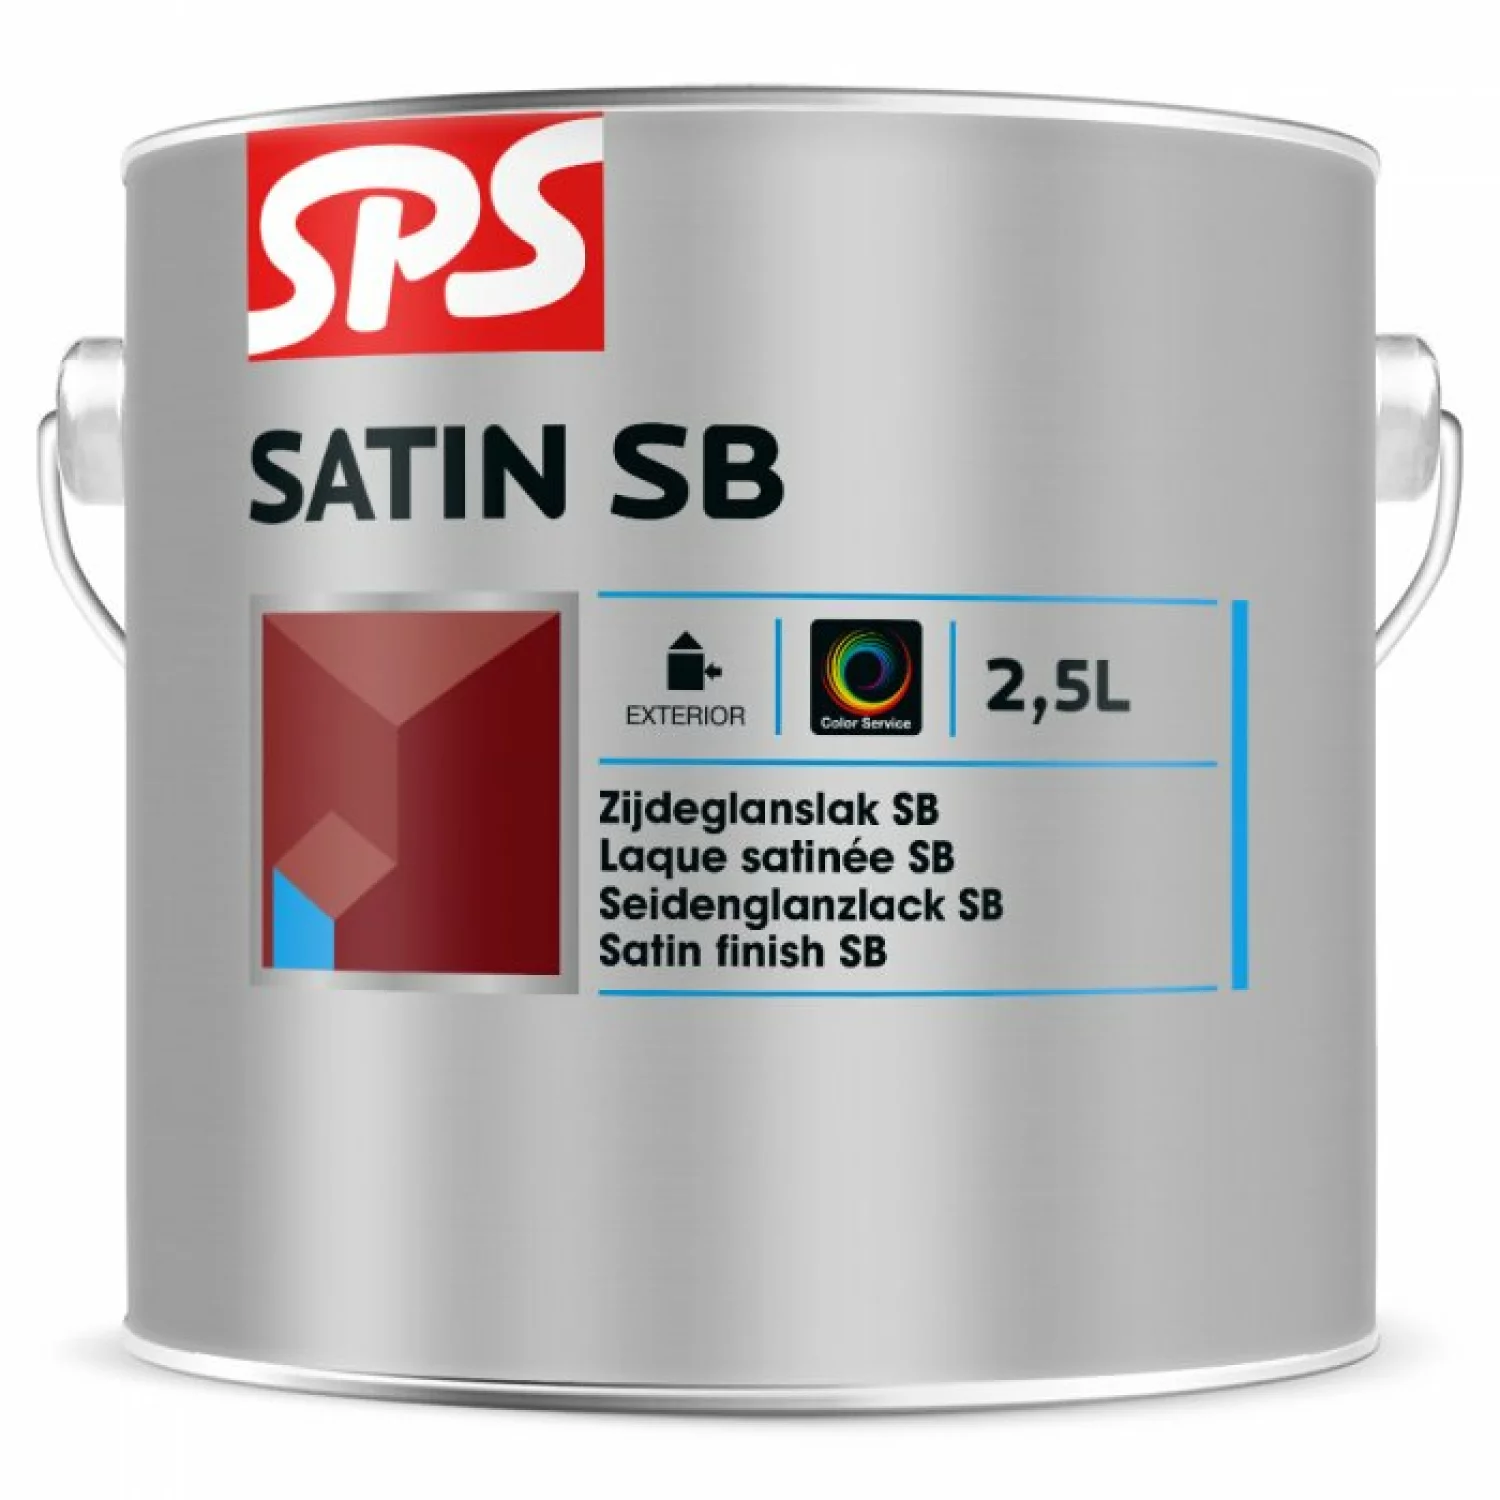 SPS Satin SB Lak - op kleur gemengd - 2,5L-image